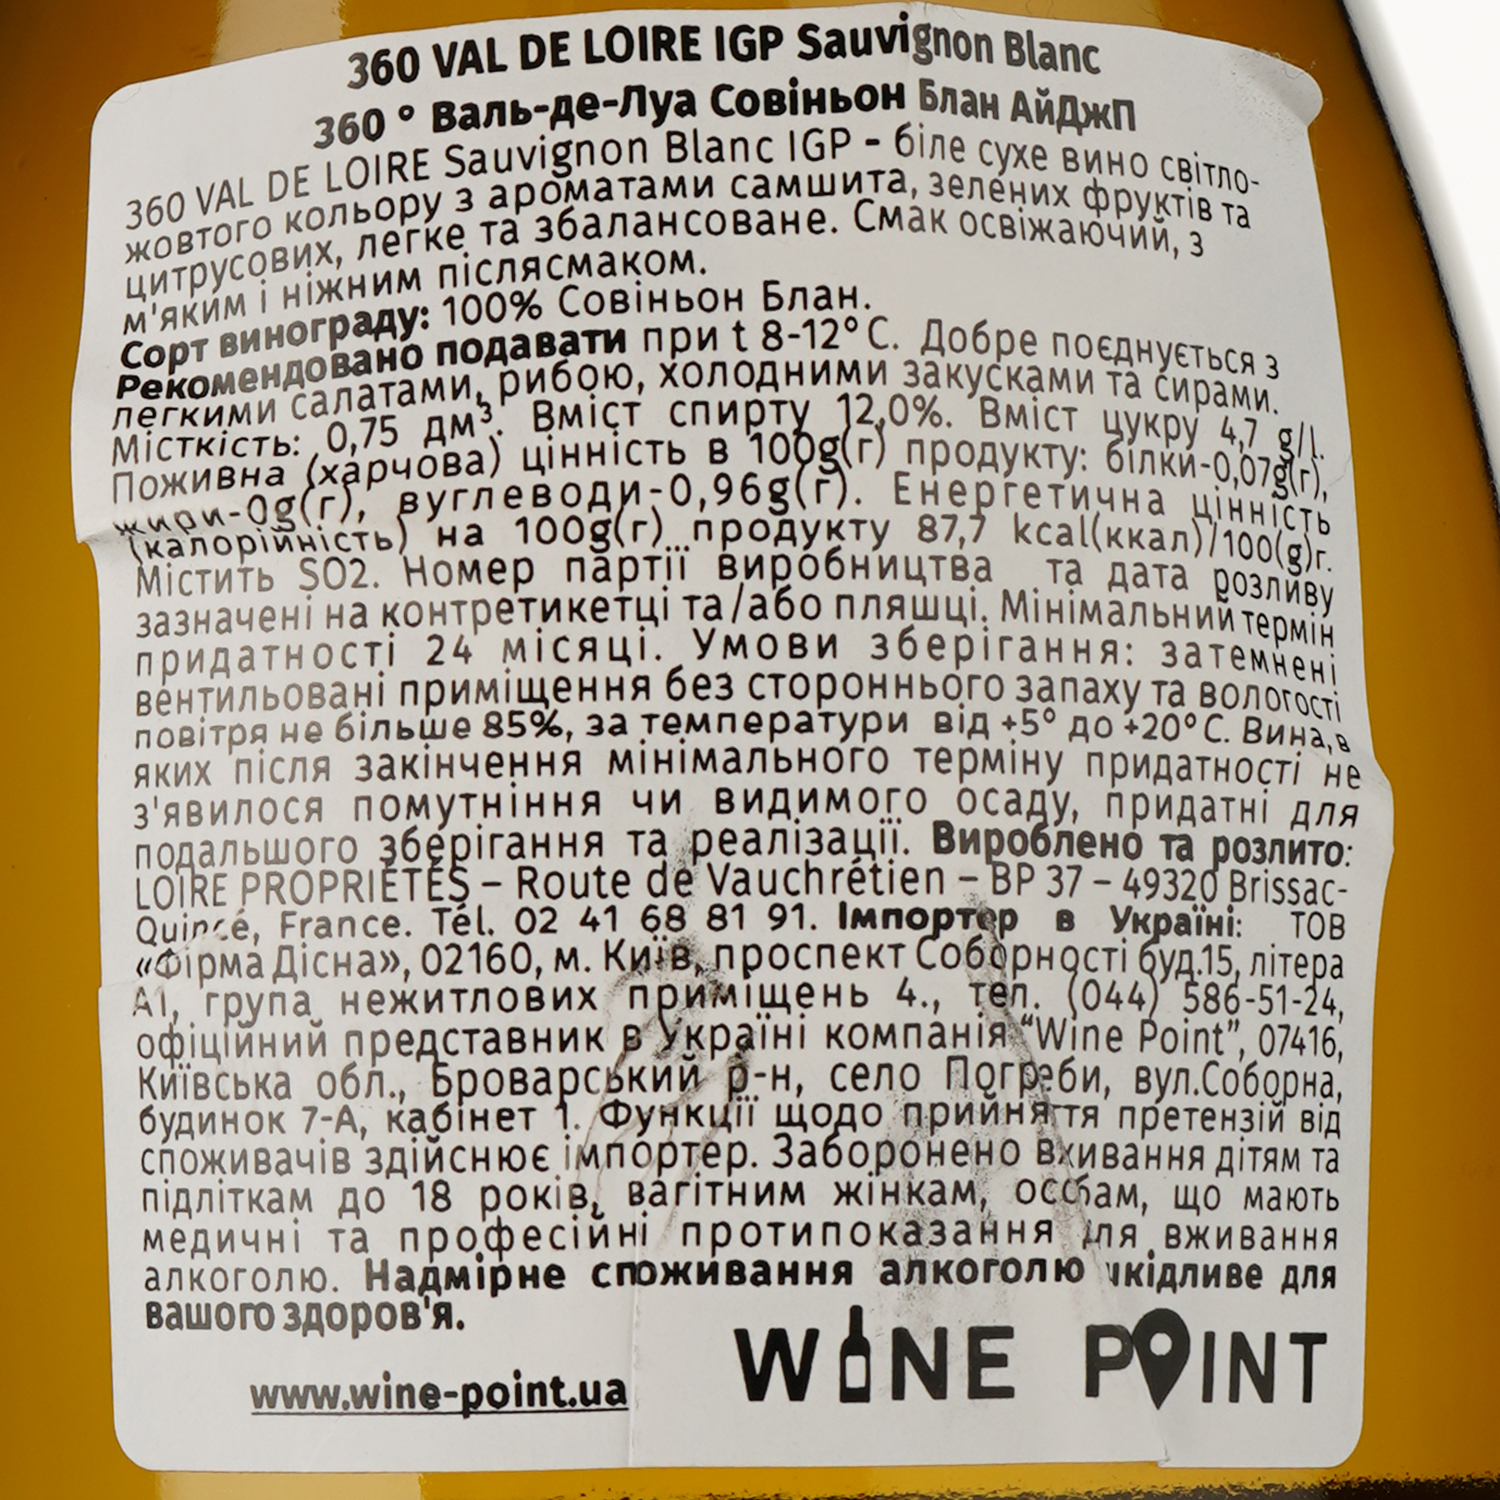 VP Вино Loire Proprietes 360 Val De Loire Sauvignon Blanc, белое, сухое, 12%, 0,75 л - фото 3